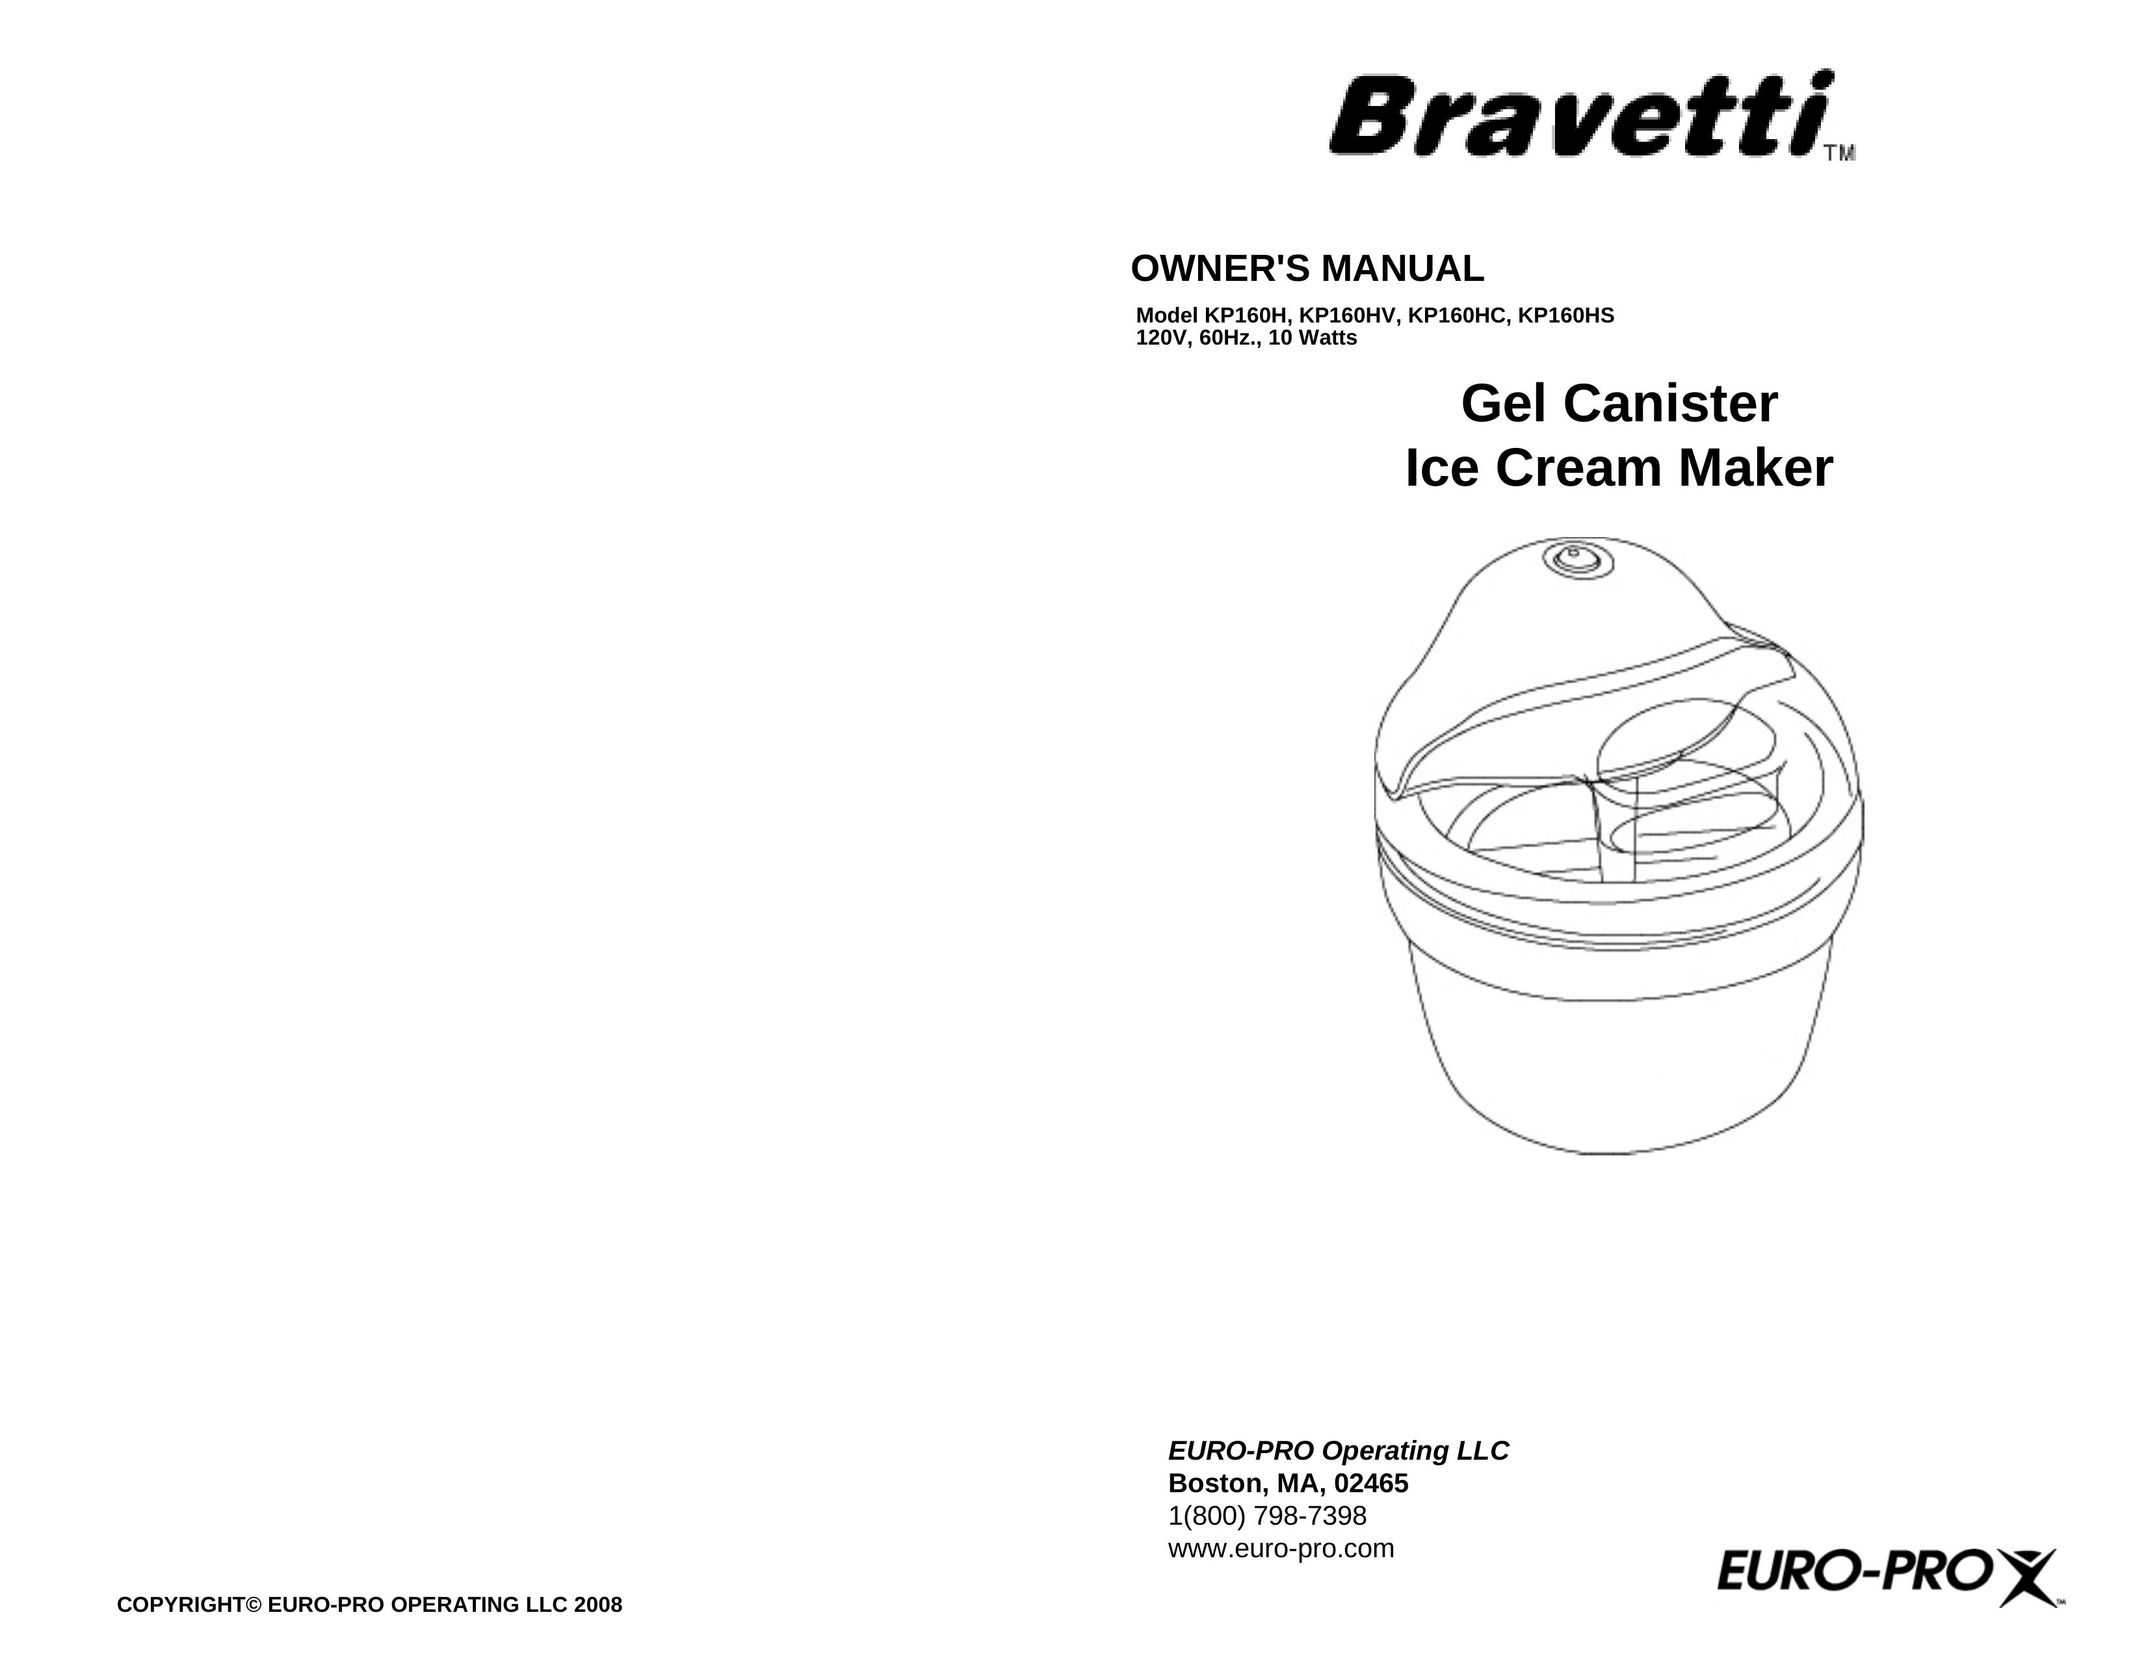 Bravetti KP160HV Frozen Dessert Maker User Manual